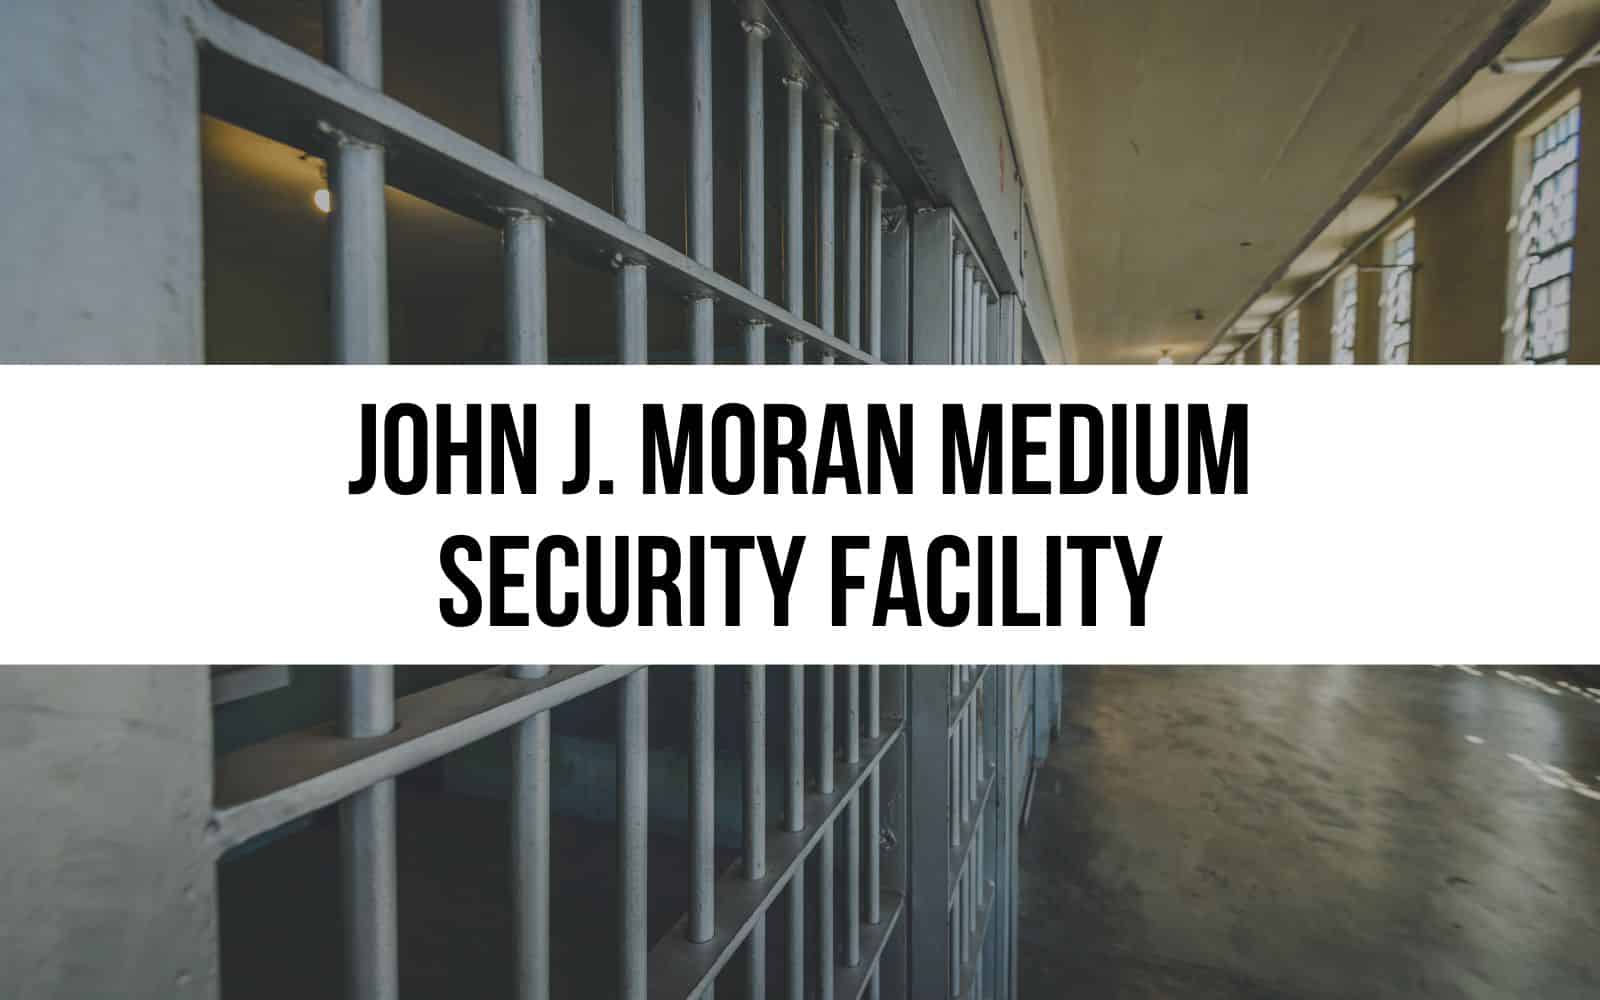 John J. Moran Medium Security Facility